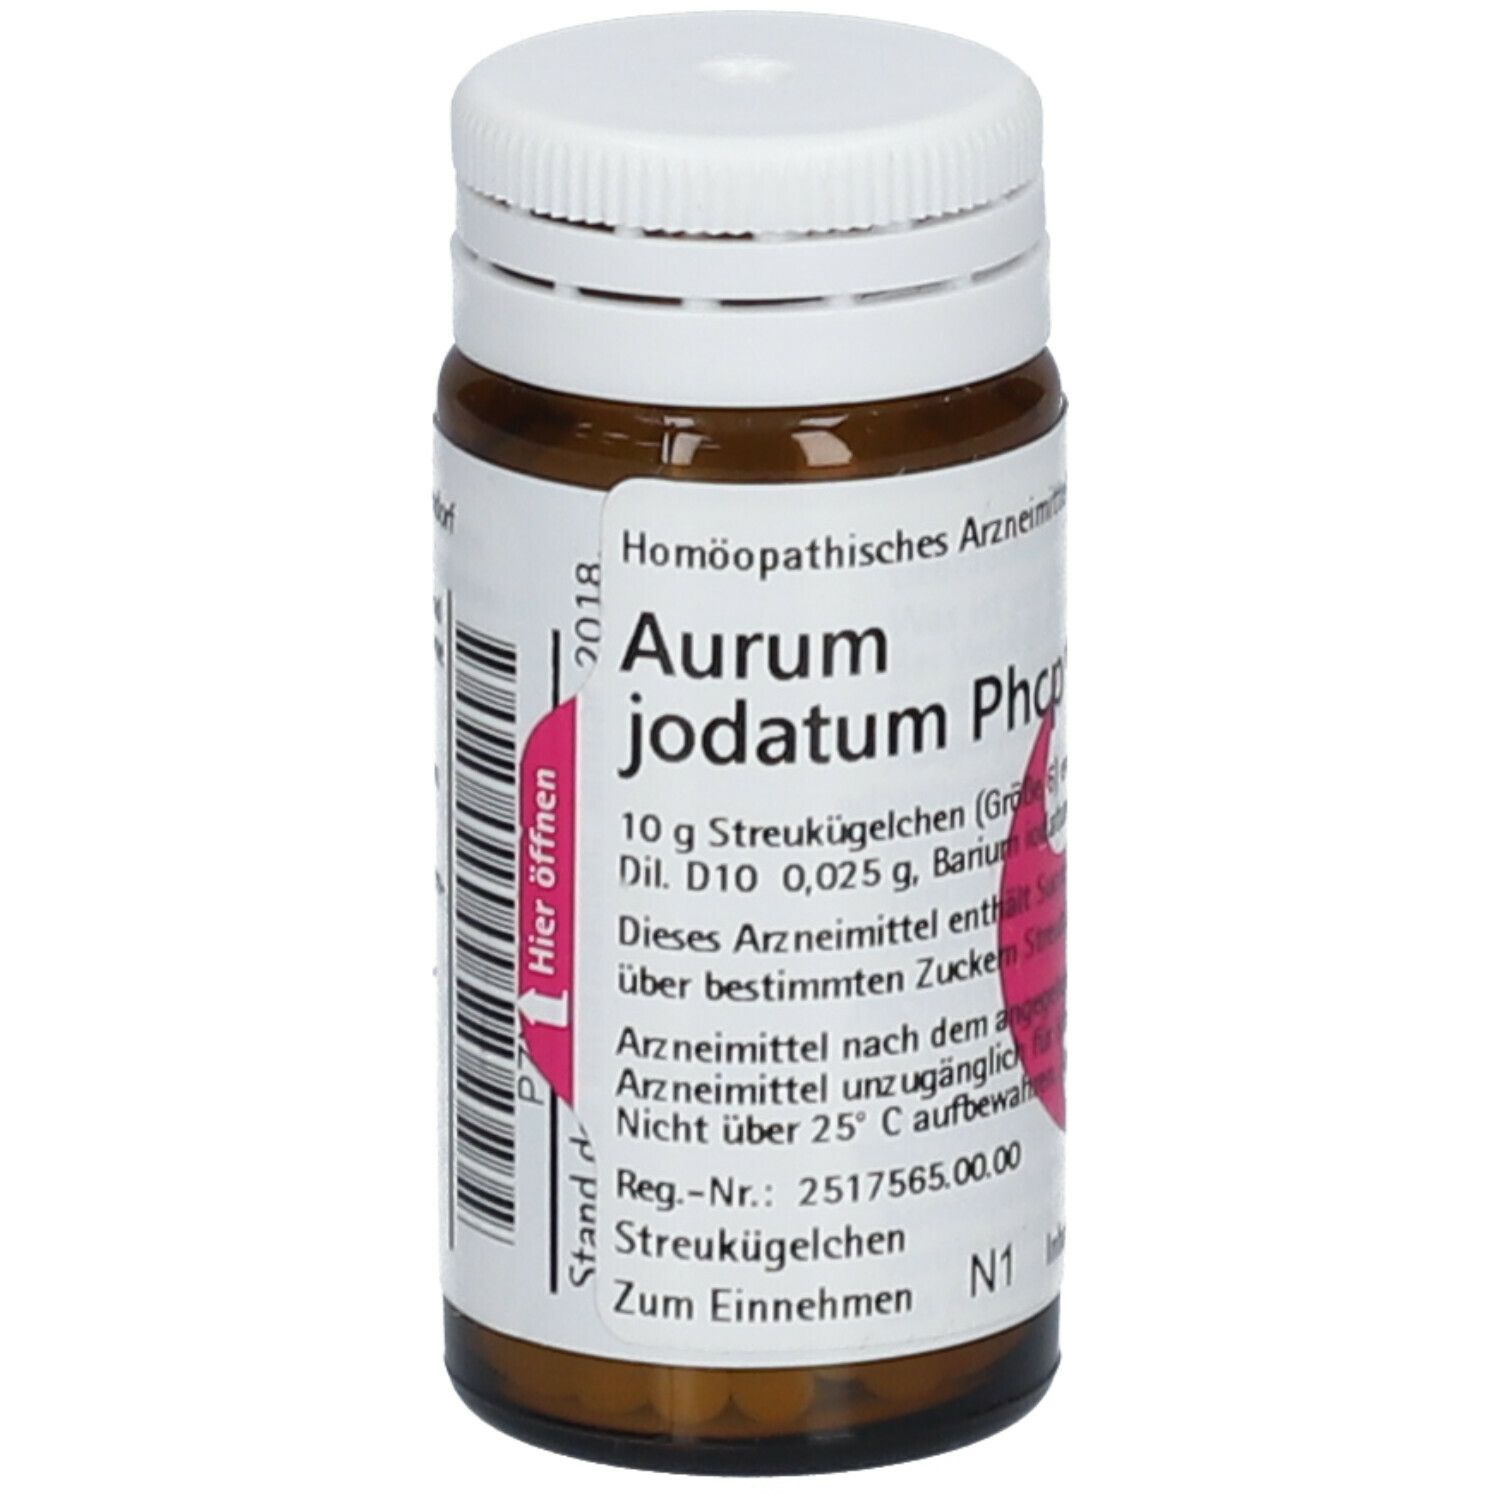 Aurum jodatum Phcp®